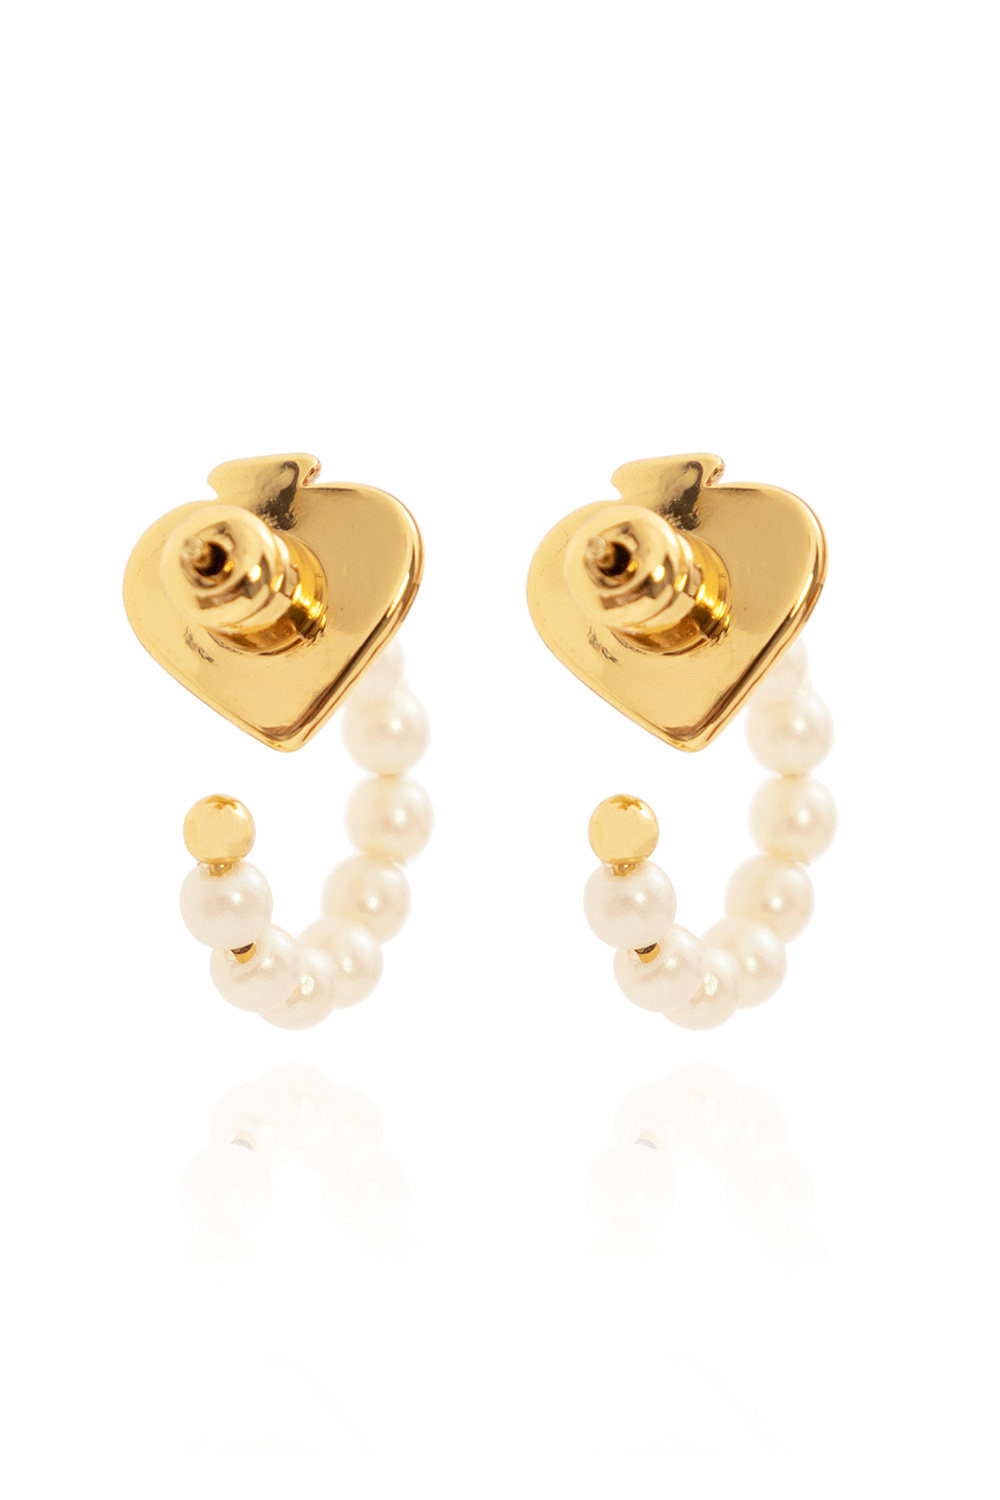 Kate Spade ‘Tiny Twinkles’ earrings